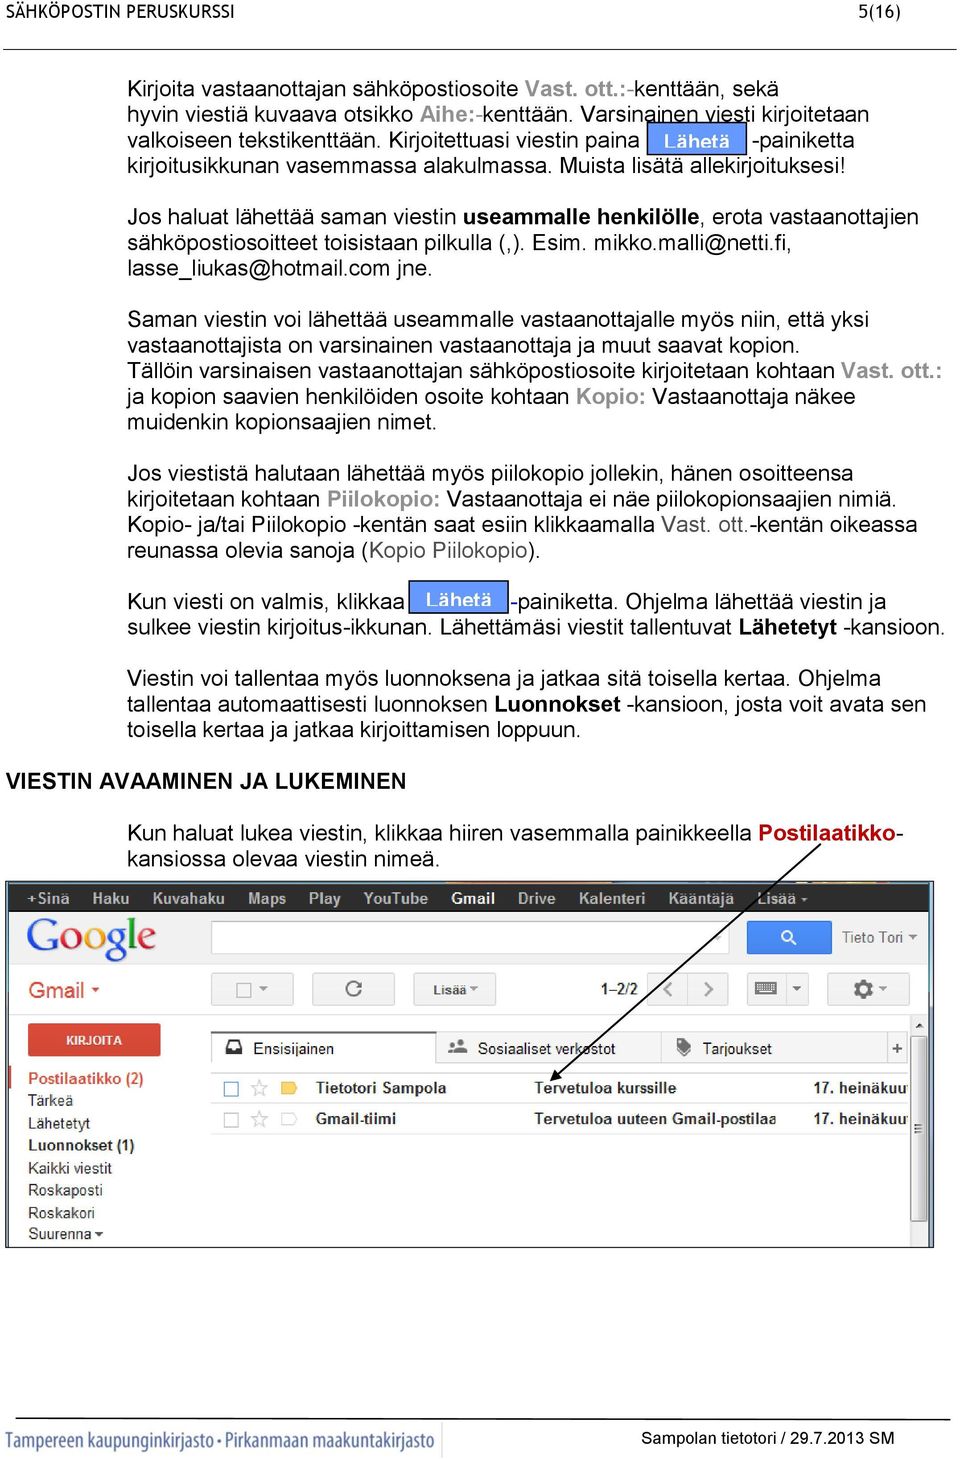 Jos haluat lähettää saman viestin useammalle henkilölle, erota vastaanottajien sähköpostiosoitteet toisistaan pilkulla (,). Esim. mikko.malli@netti.fi, lasse_liukas@hotmail.com jne.